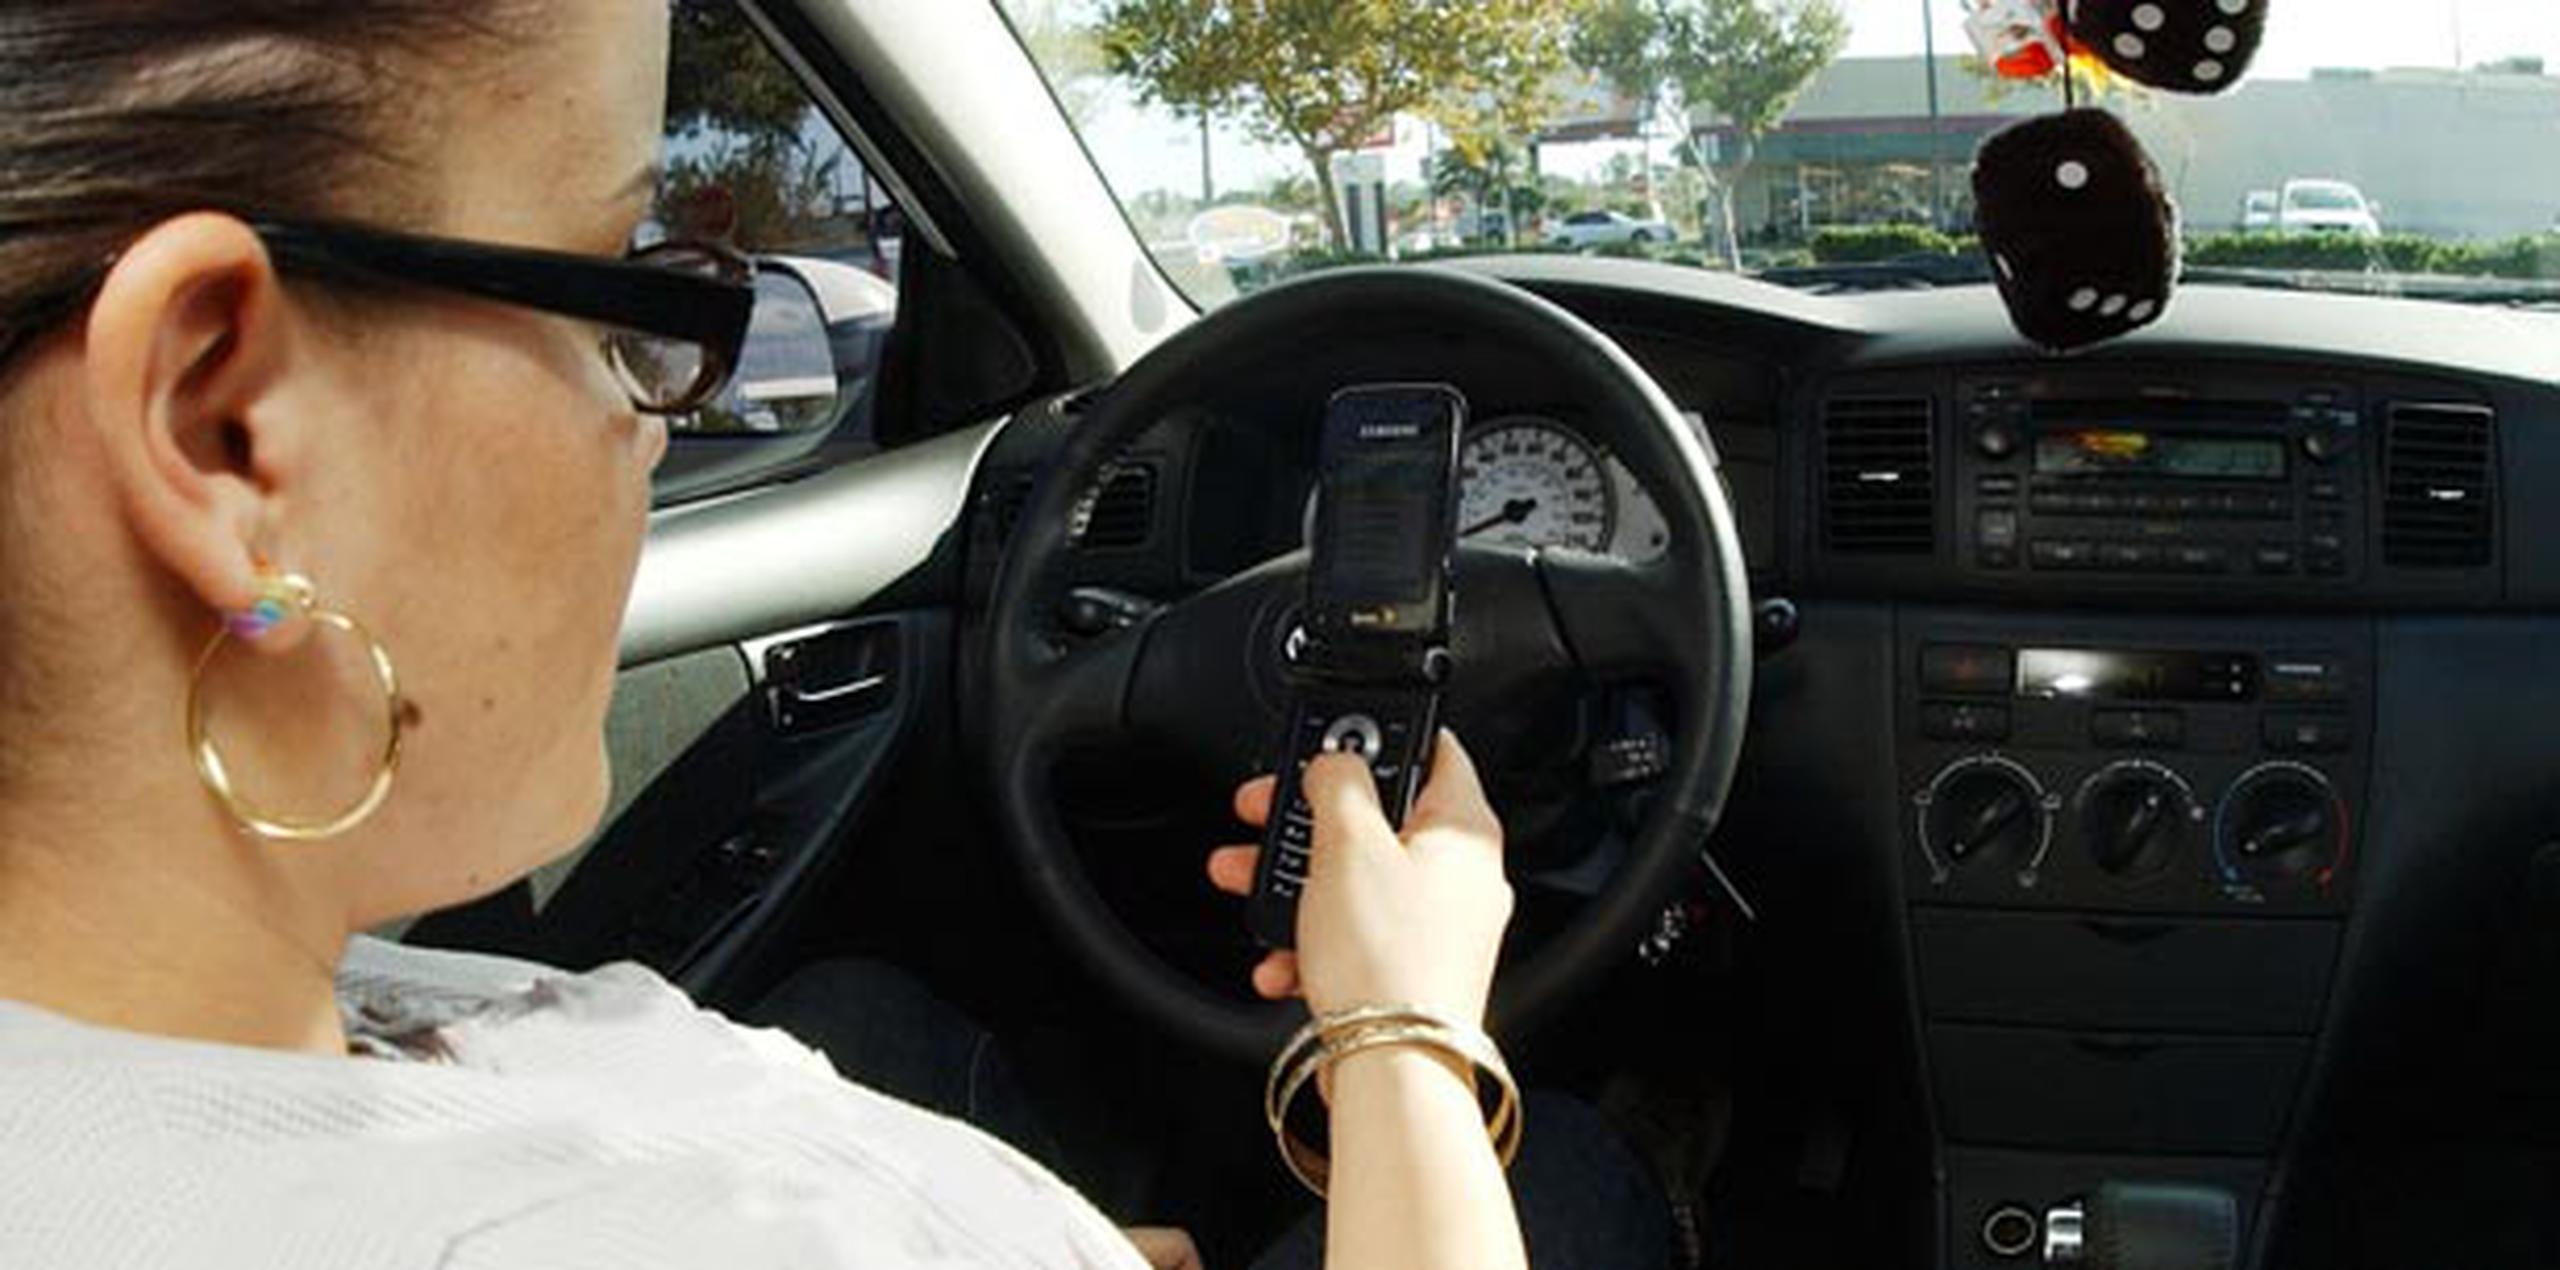 Estudios previos con simuladores, pruebas de manejo y registros de celular sugieren que el riesgo al conducir aumenta cuando la gente está en el teléfono móvil. (Archivo)